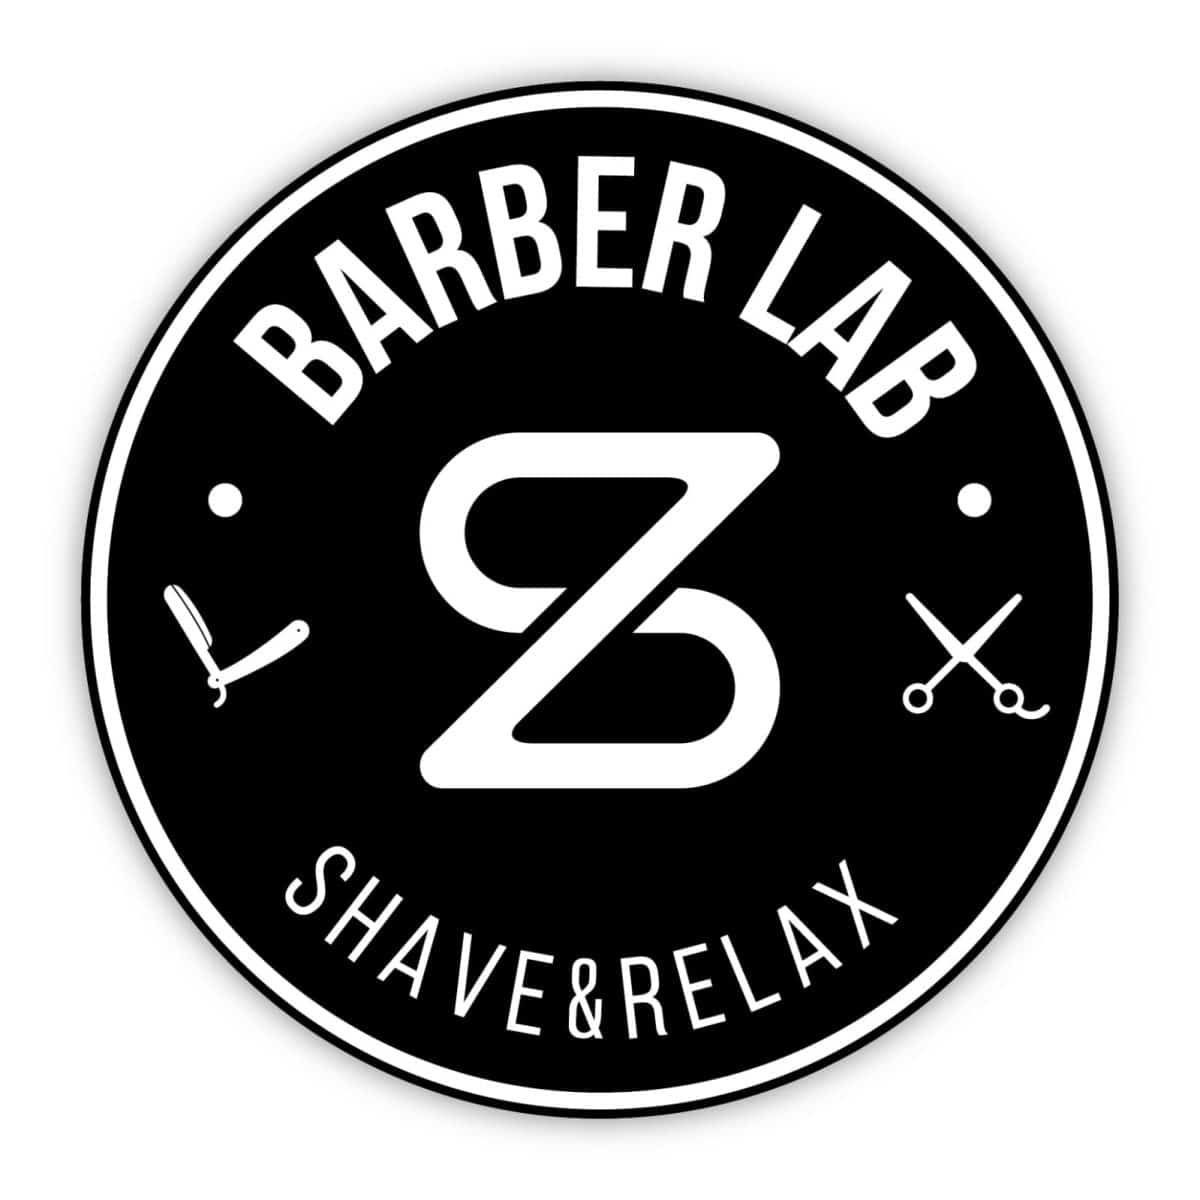 nbb sostenitori barber lab